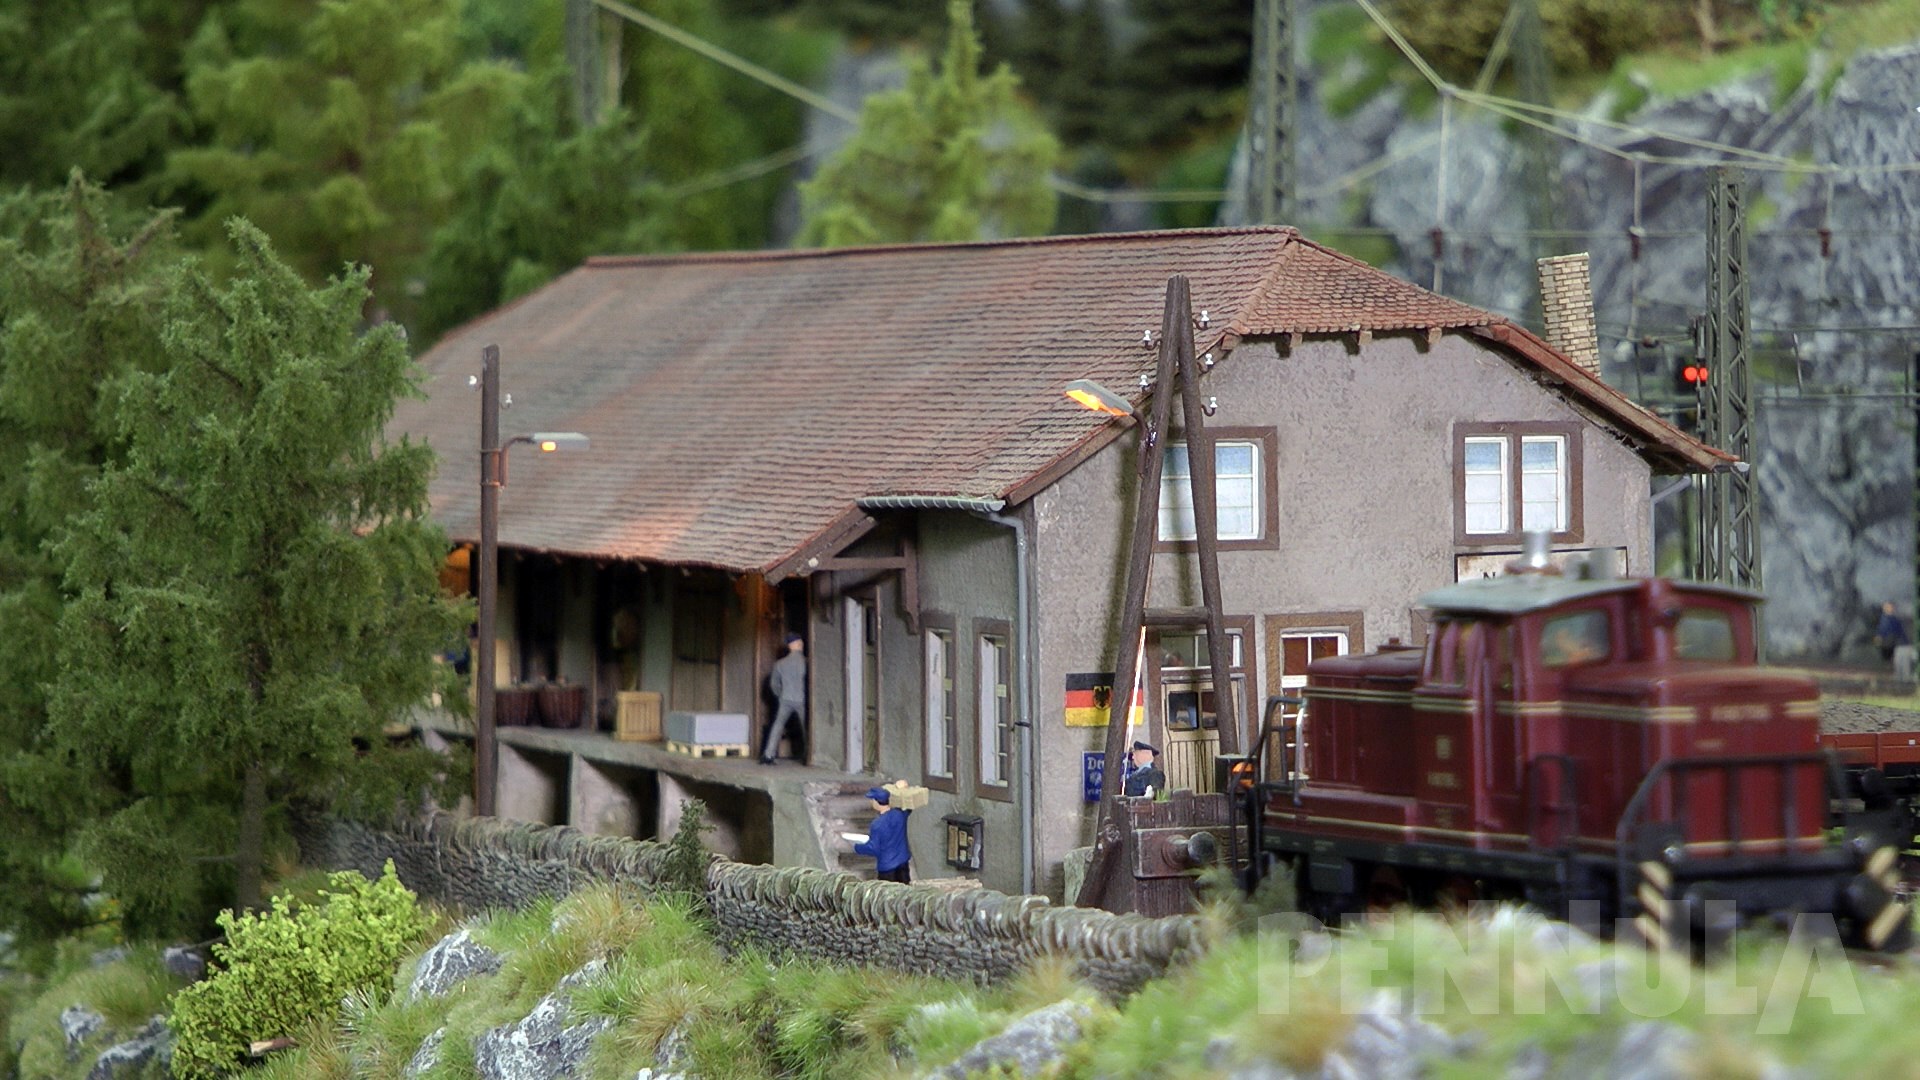 Modelleisenbahn H0 Märklin Virgental: Eine der echten Modellbahn Traumanlagen mit vielen Dampfloks